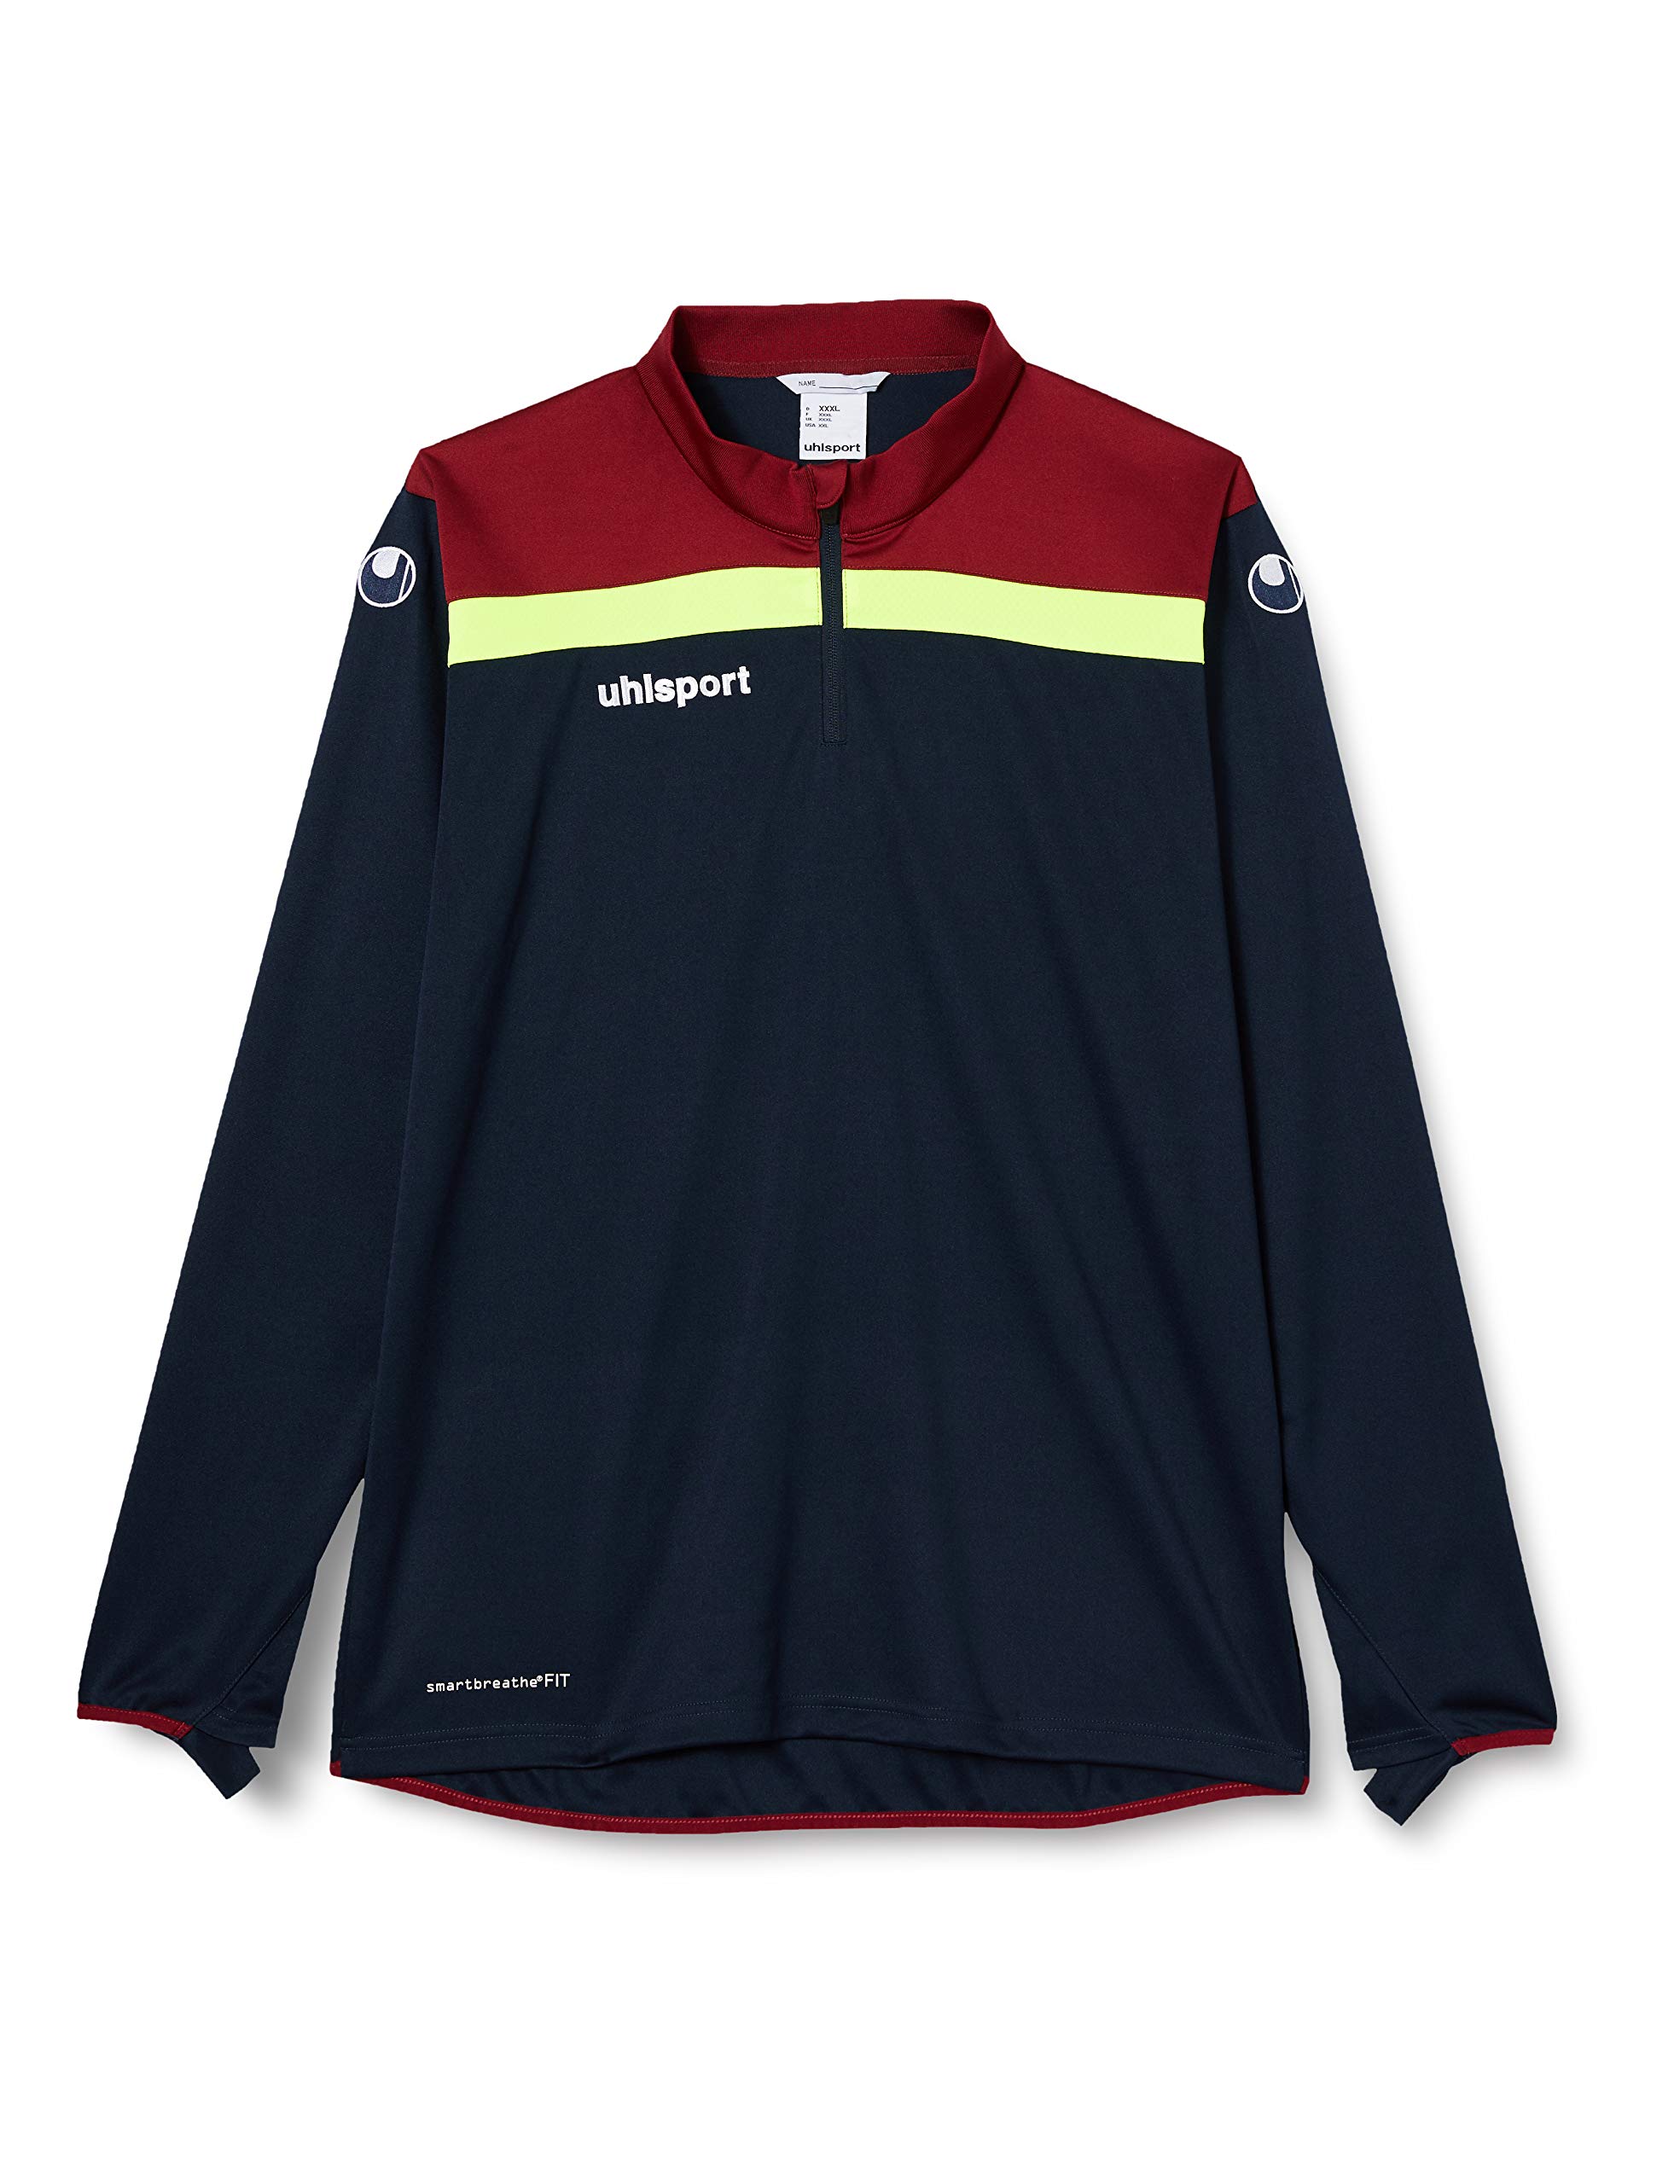 uhlsport Herren Offense 23 1/4 Zip Top Sweatshirt, Marine/Bordeaux/Fluo gelb, S